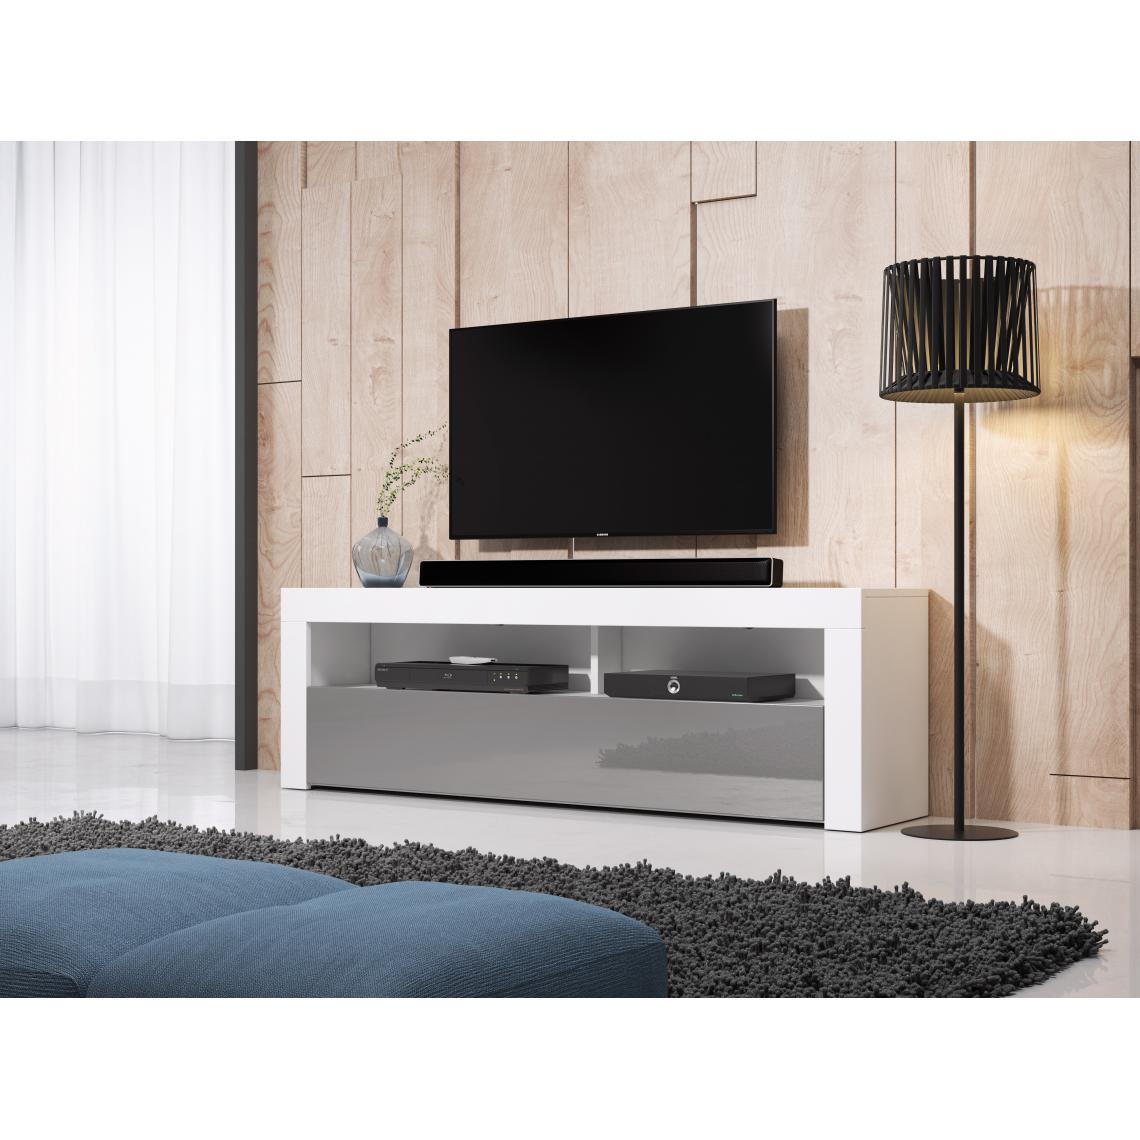 3xeliving - Meuble TV moderne / élégant Nuntak blanc / gris brillant 160cm - Meubles TV, Hi-Fi